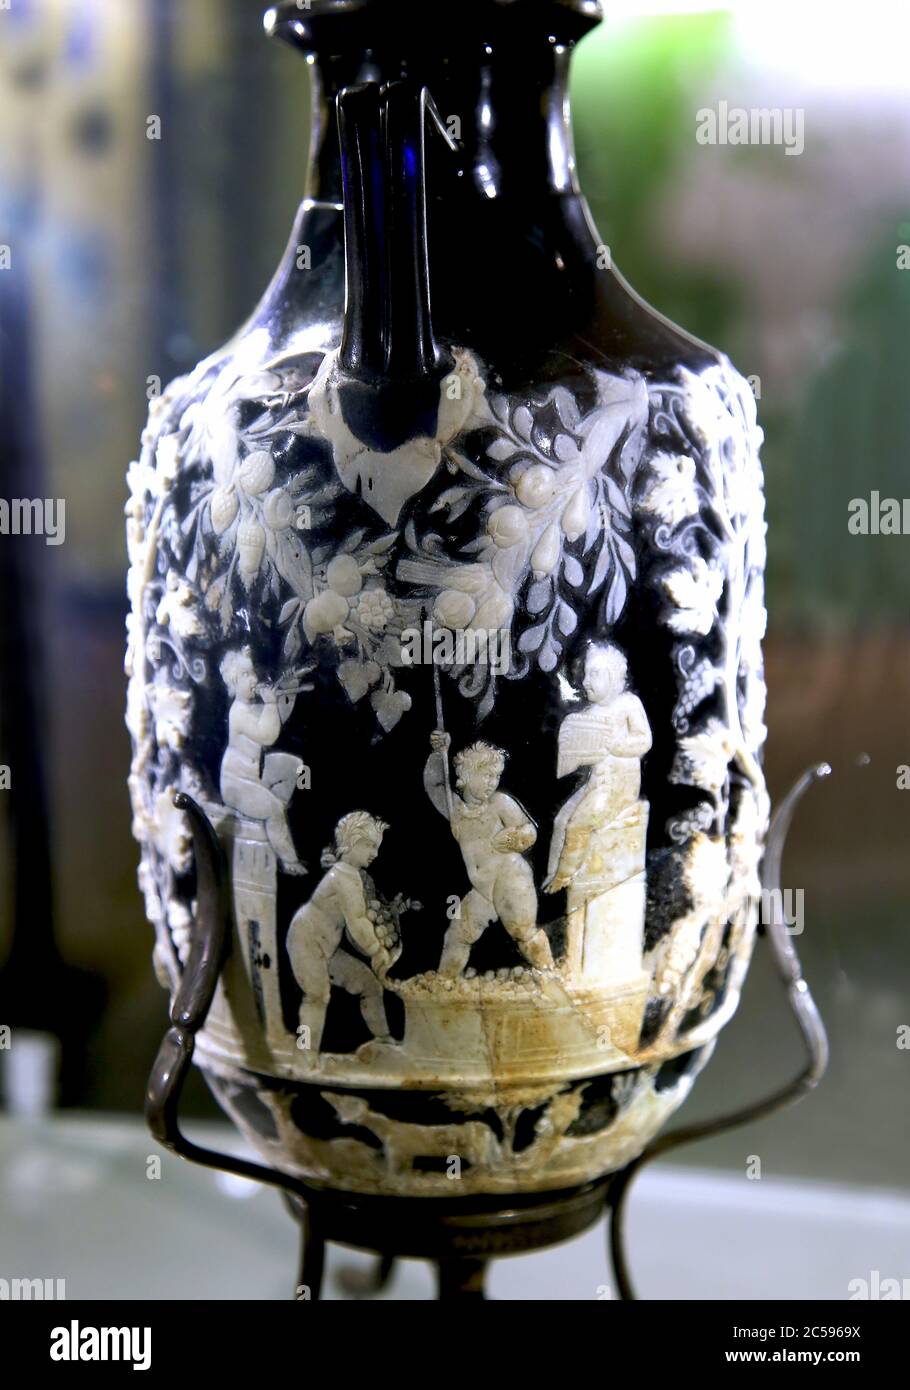 Amphoriskos kennen sich als die blaue Vase. Cameo Glasvase mit Kupiden. Von Pompeji: 1. Jahrhundert n. Chr. Archäologisches Museum Neapel, Italien. Stockfoto